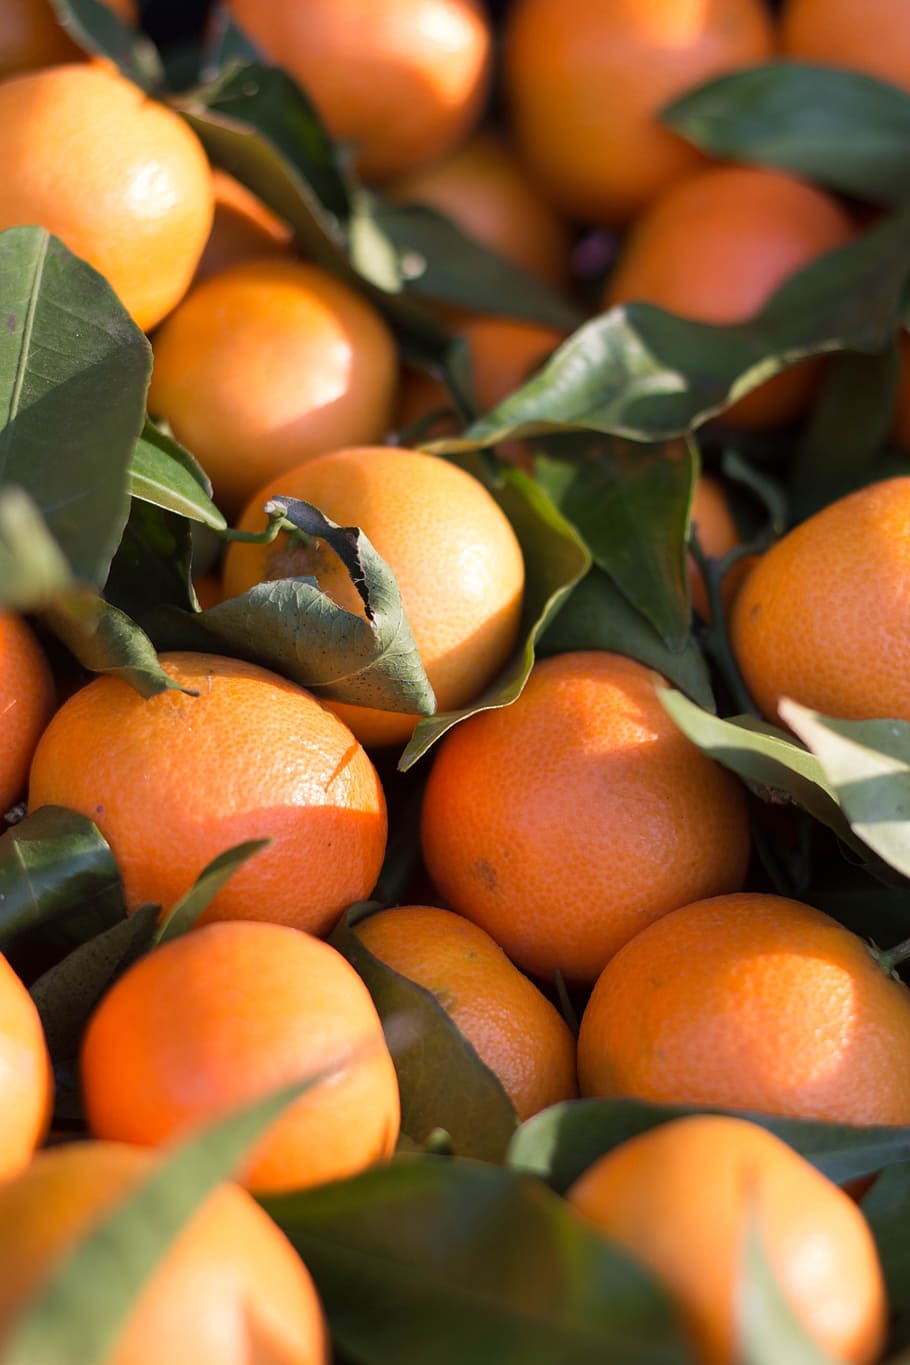 Citrus, Fruit, Mandarin, Clementine, tangerine, orange, harvest, food, citrus Fruit, freshness